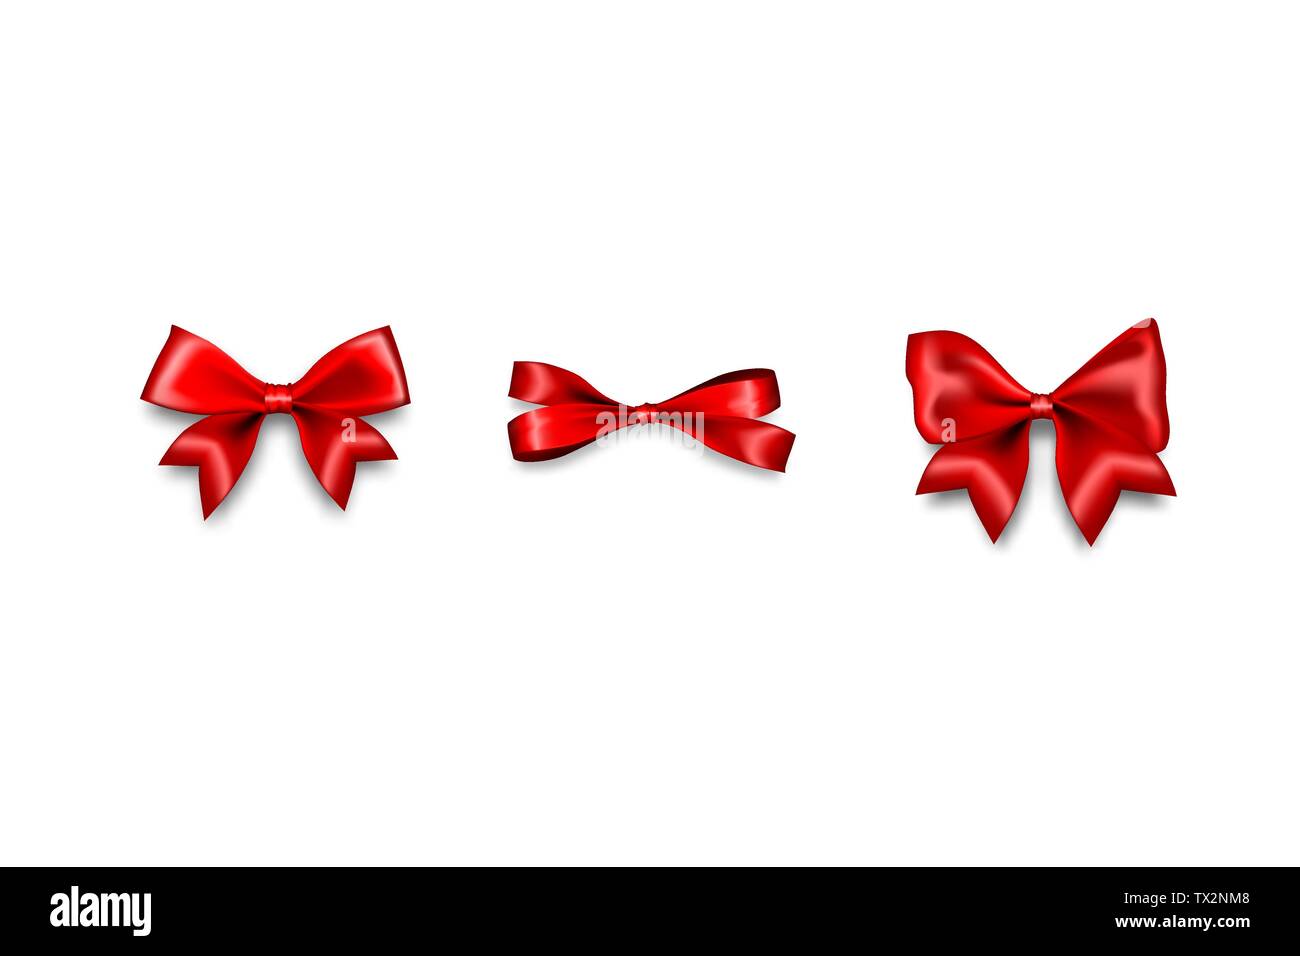 Rosso per le vacanze di Natale regalo satin bow knot nastro. Compleanno di progettazione realistica vettore isolato. La seta lucente vendita tessile nastro. Illustrazione Vettoriale